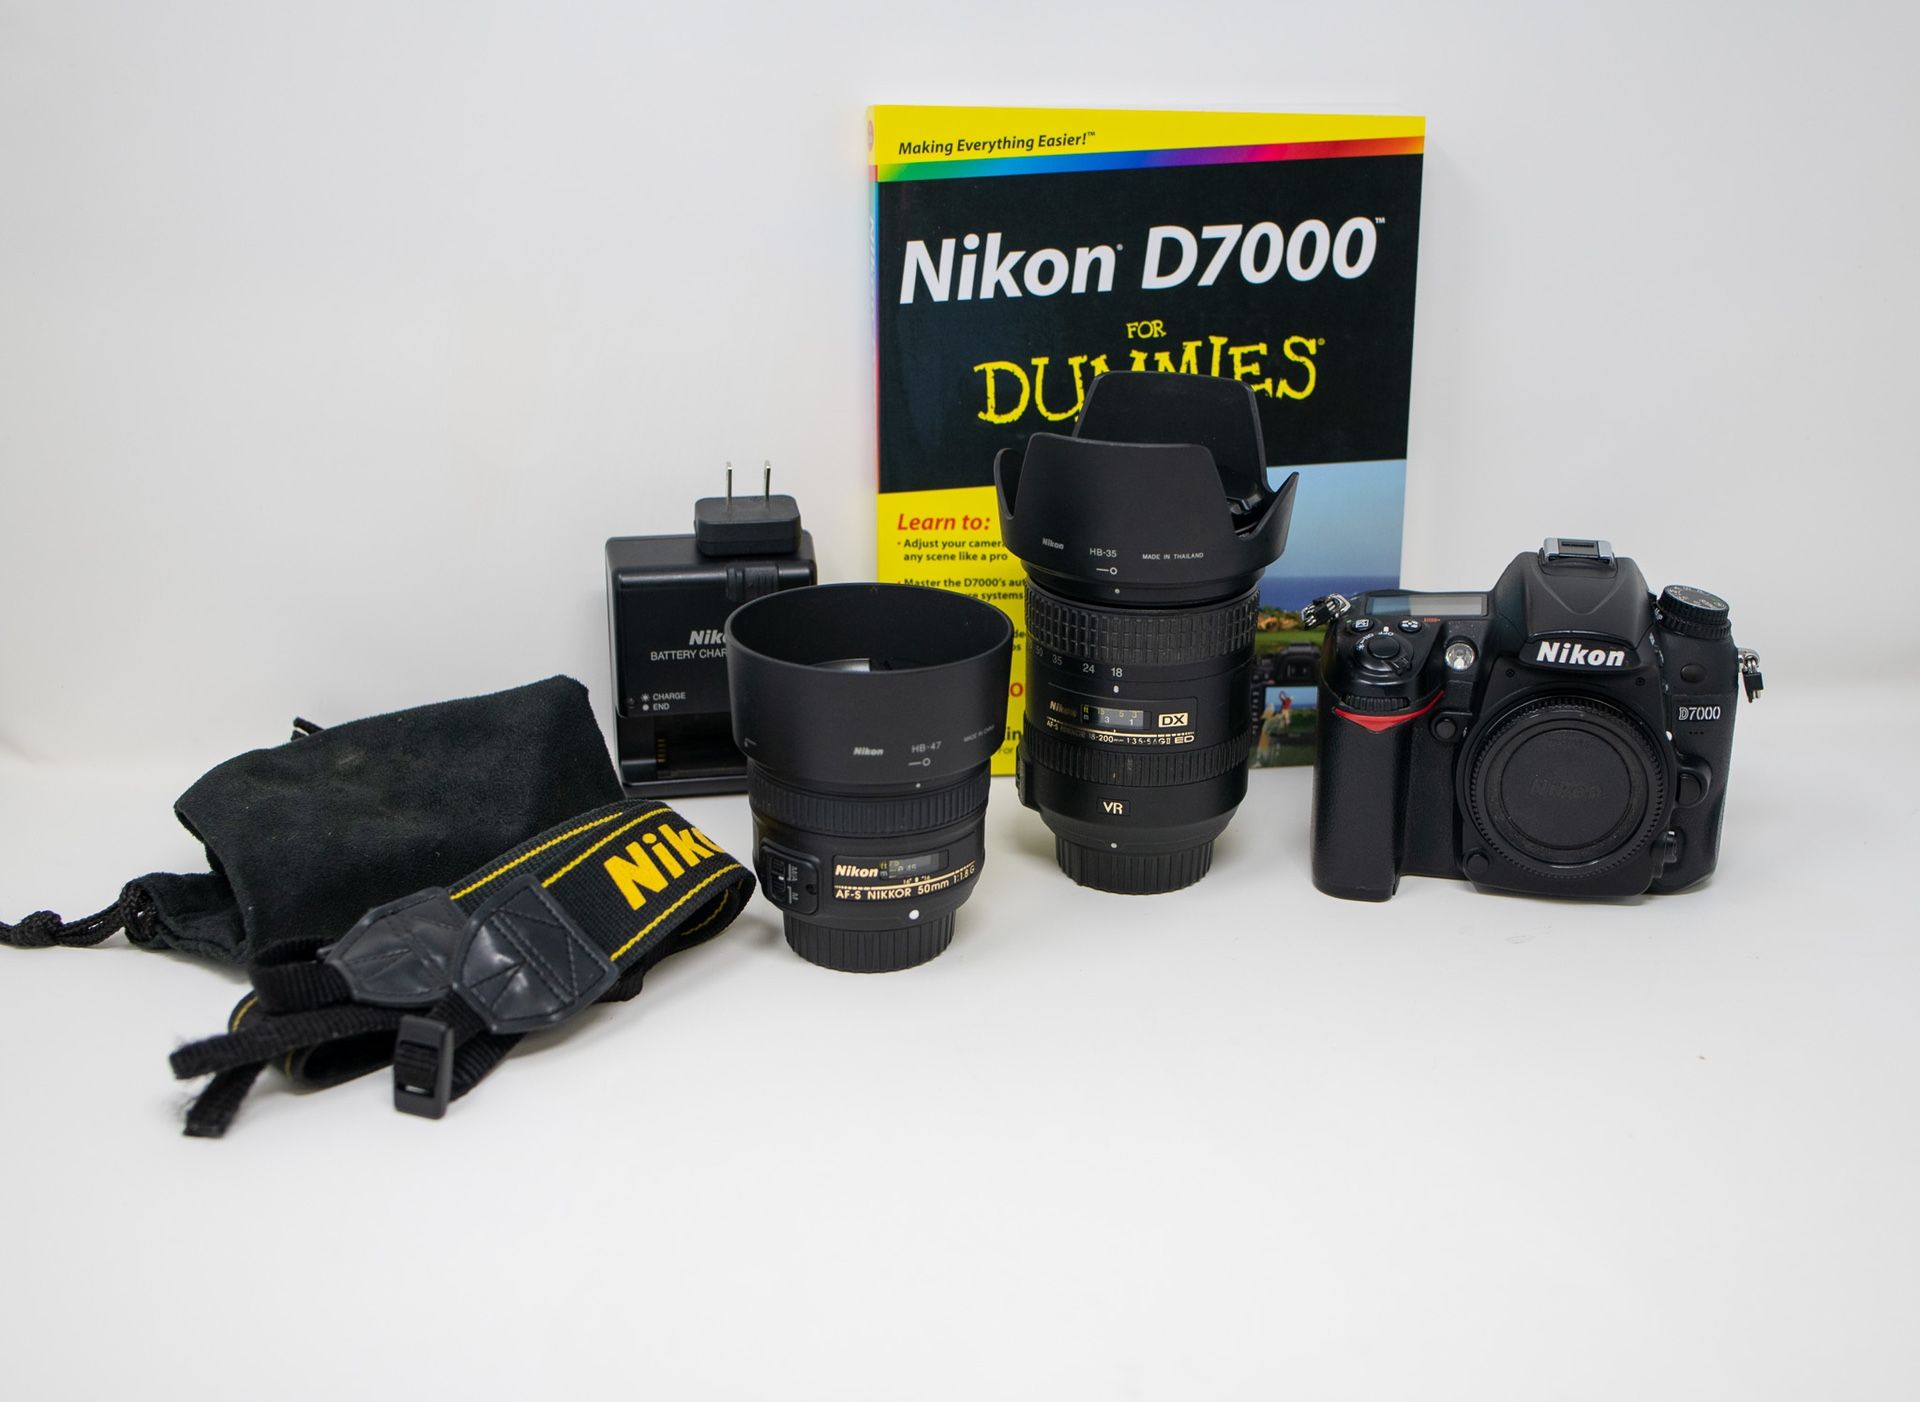 Nikon D7000 DSLR, Lenses, Flash Combo